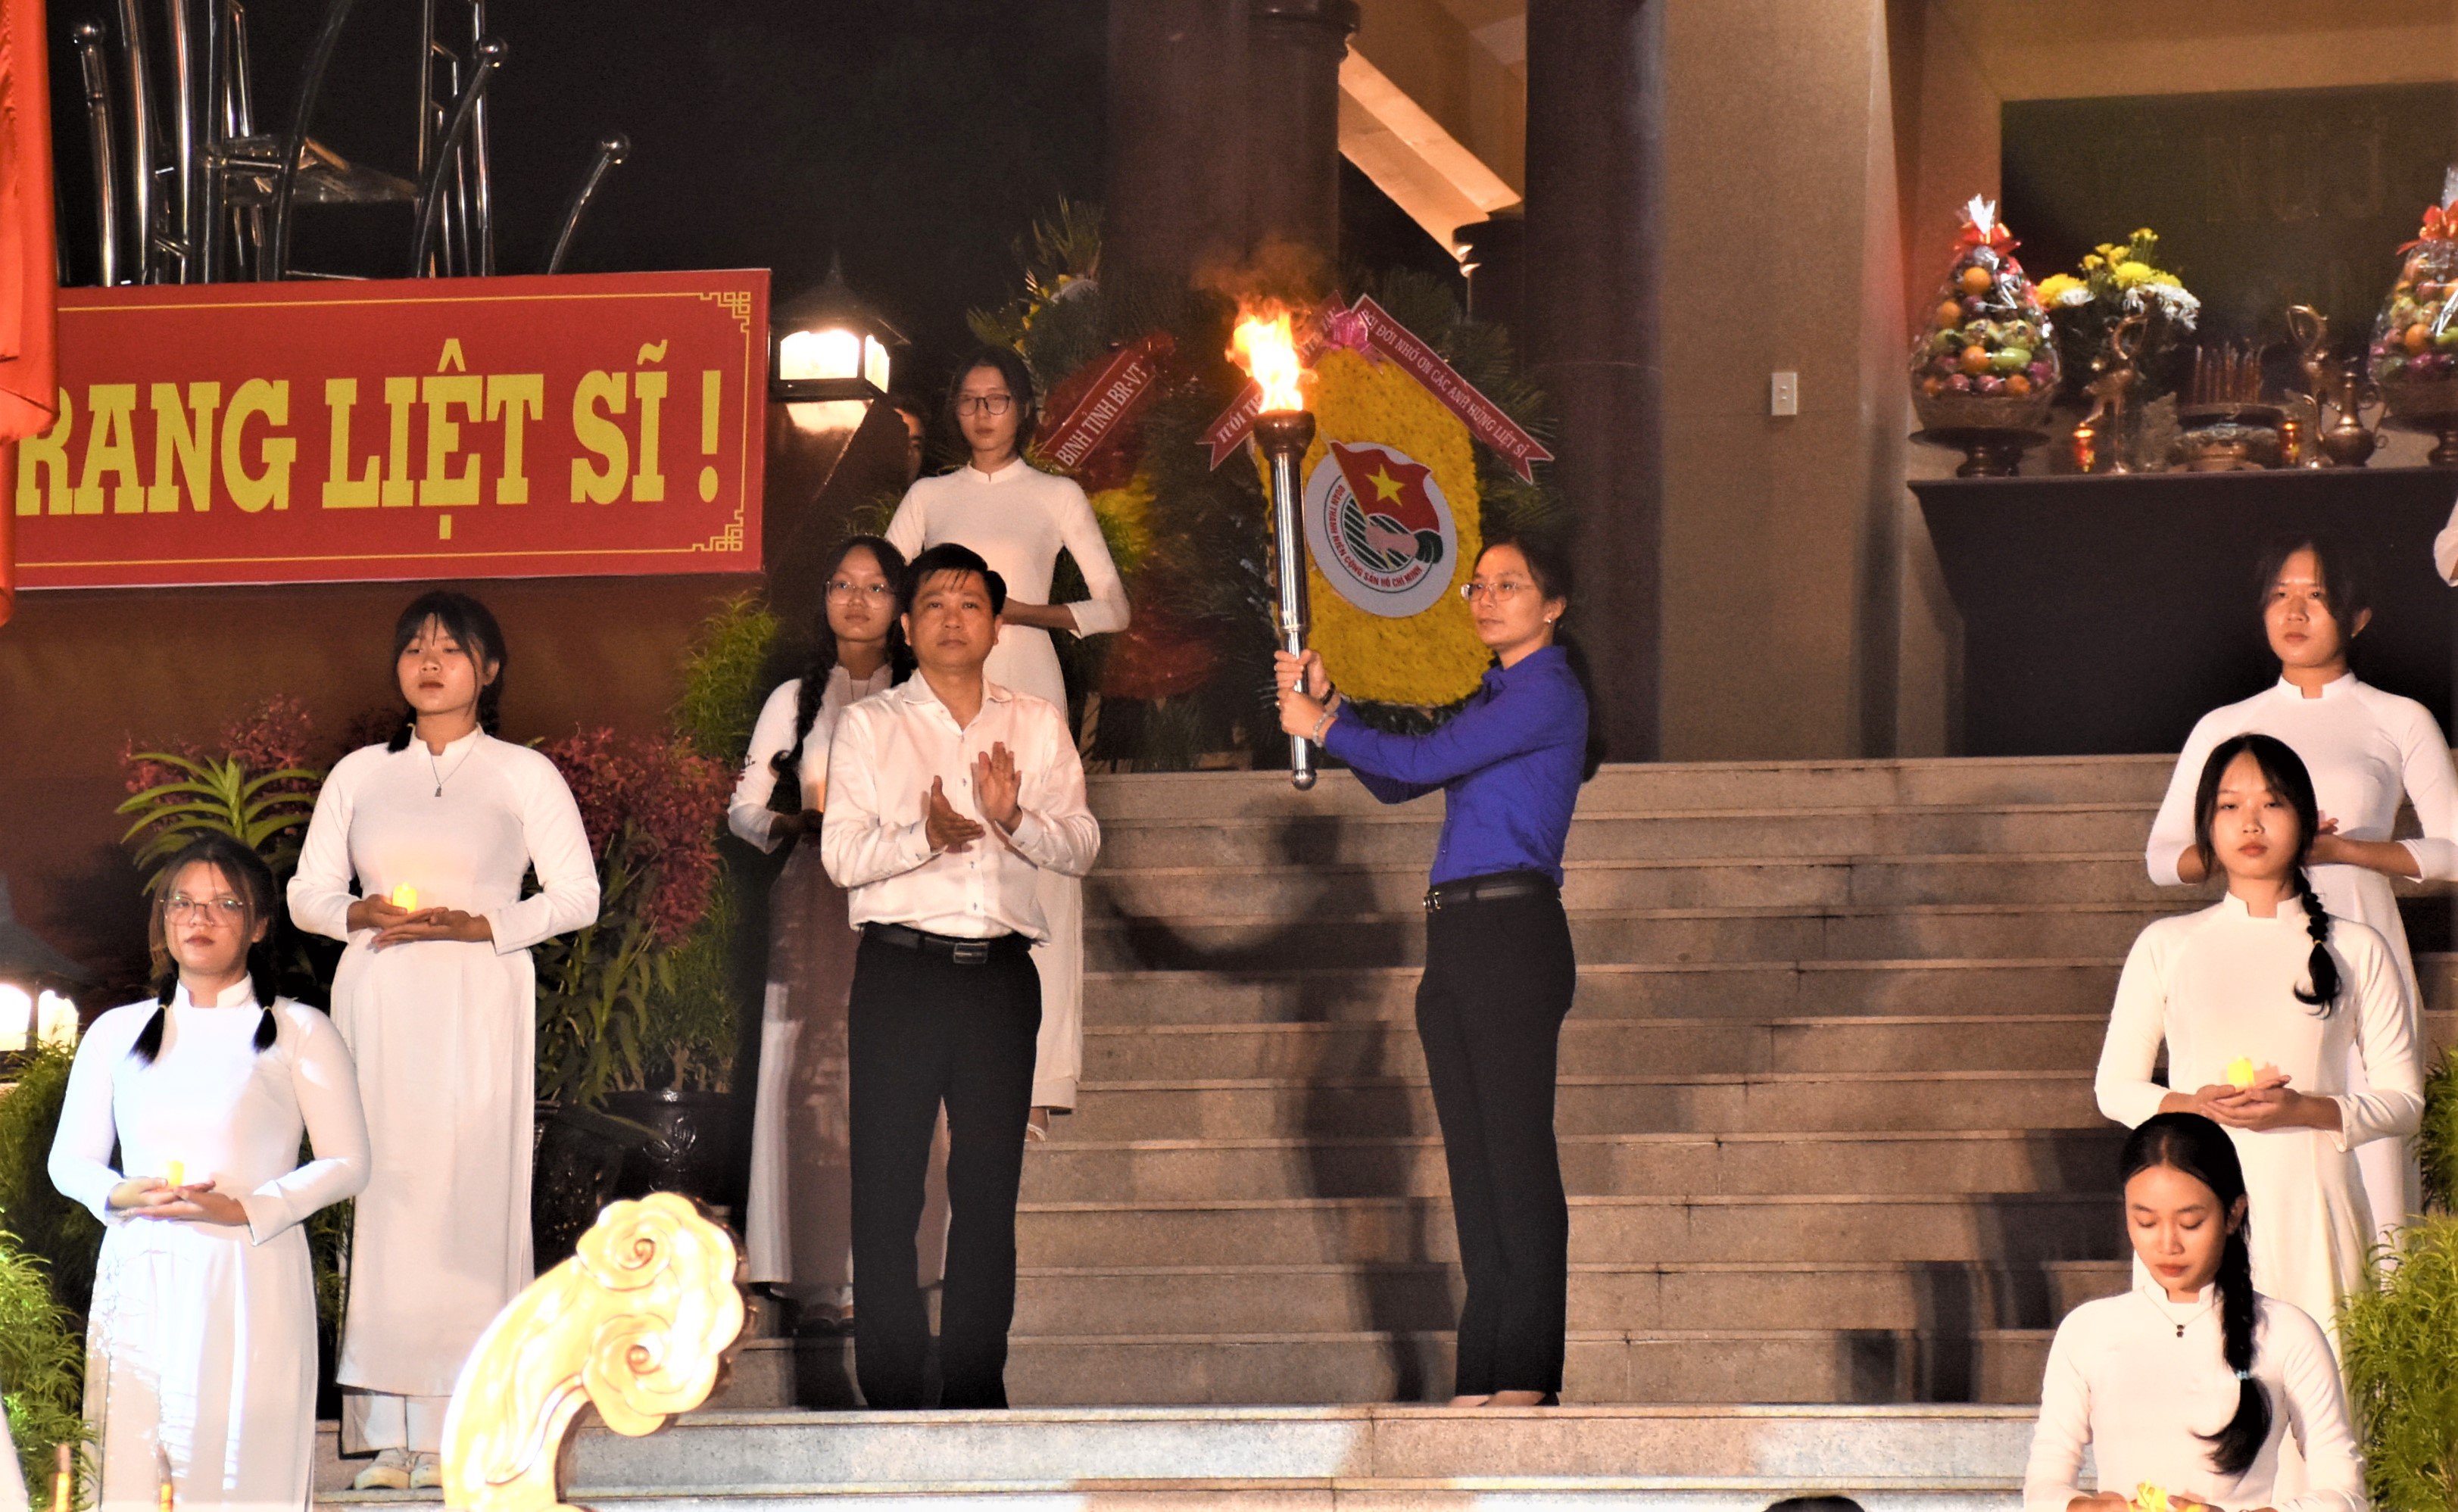 Ông Trần Văn Tuấn, Phó Chủ tịch UBND tỉnh thực hiện nghi thức truyền lửa cho ĐVTN tỉnh để đồng loạt thắp sáng 3.200 phần mộ liệt sĩ tại Nghĩa trang liệt sĩ tỉnh.